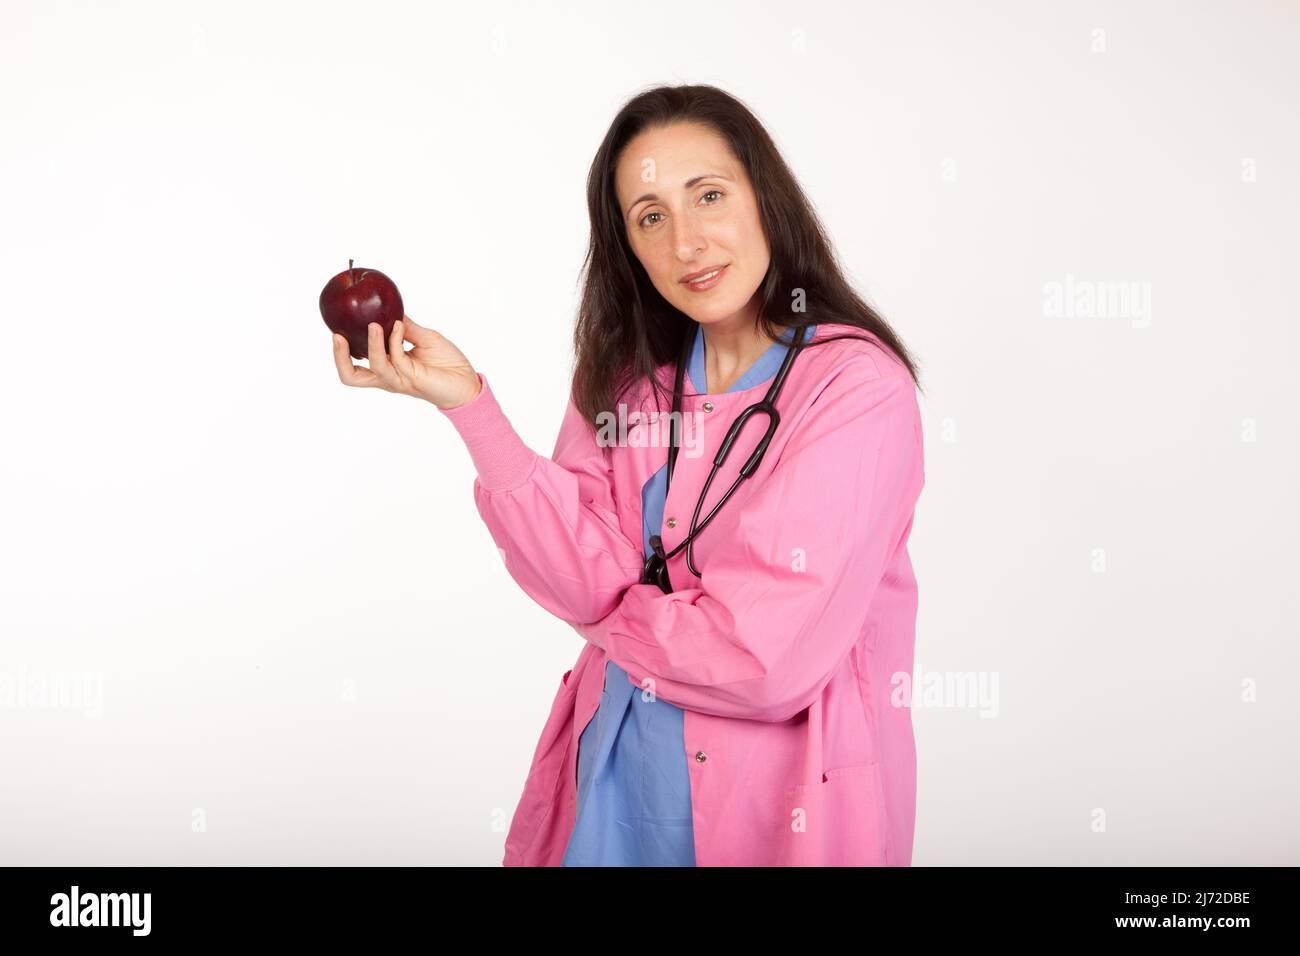 Le médecin du fournisseur de soins de santé suggère une pomme pour un mode de vie sain Banque D'Images